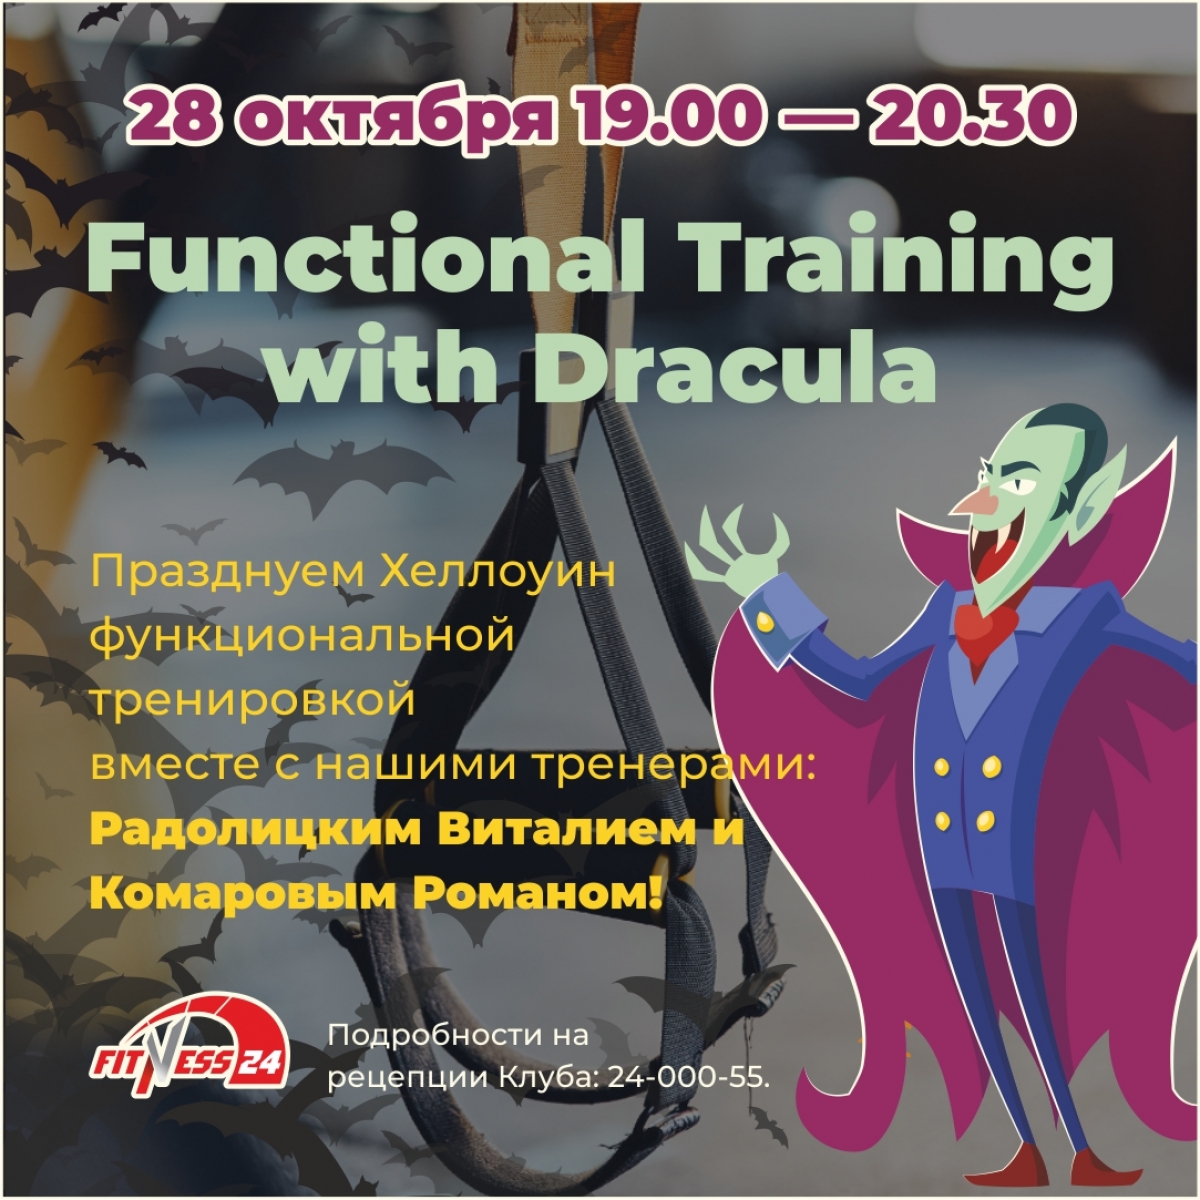 Functional Training with Dracula в Fitness24 на Ветеранов!